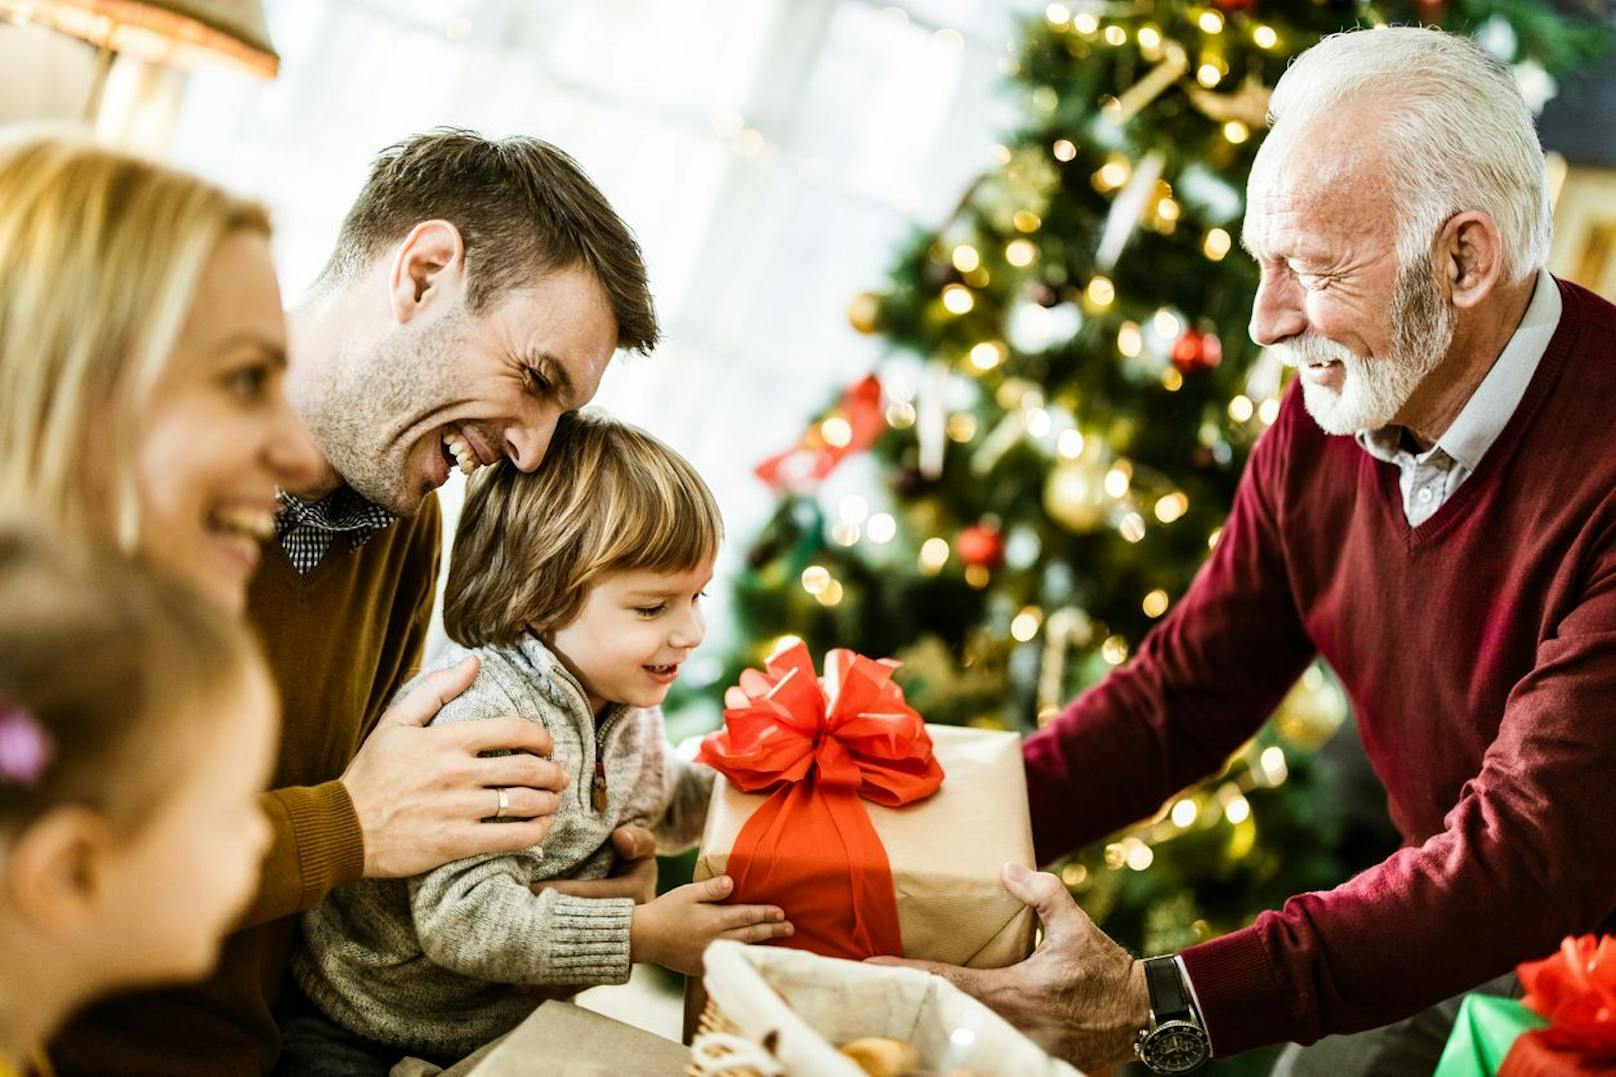 Schöne Bescherung: Etwa der Hälfte der 16- bis 74-Jährigen macht es Spaß, Weihnachtsgeschenke einzukaufen.